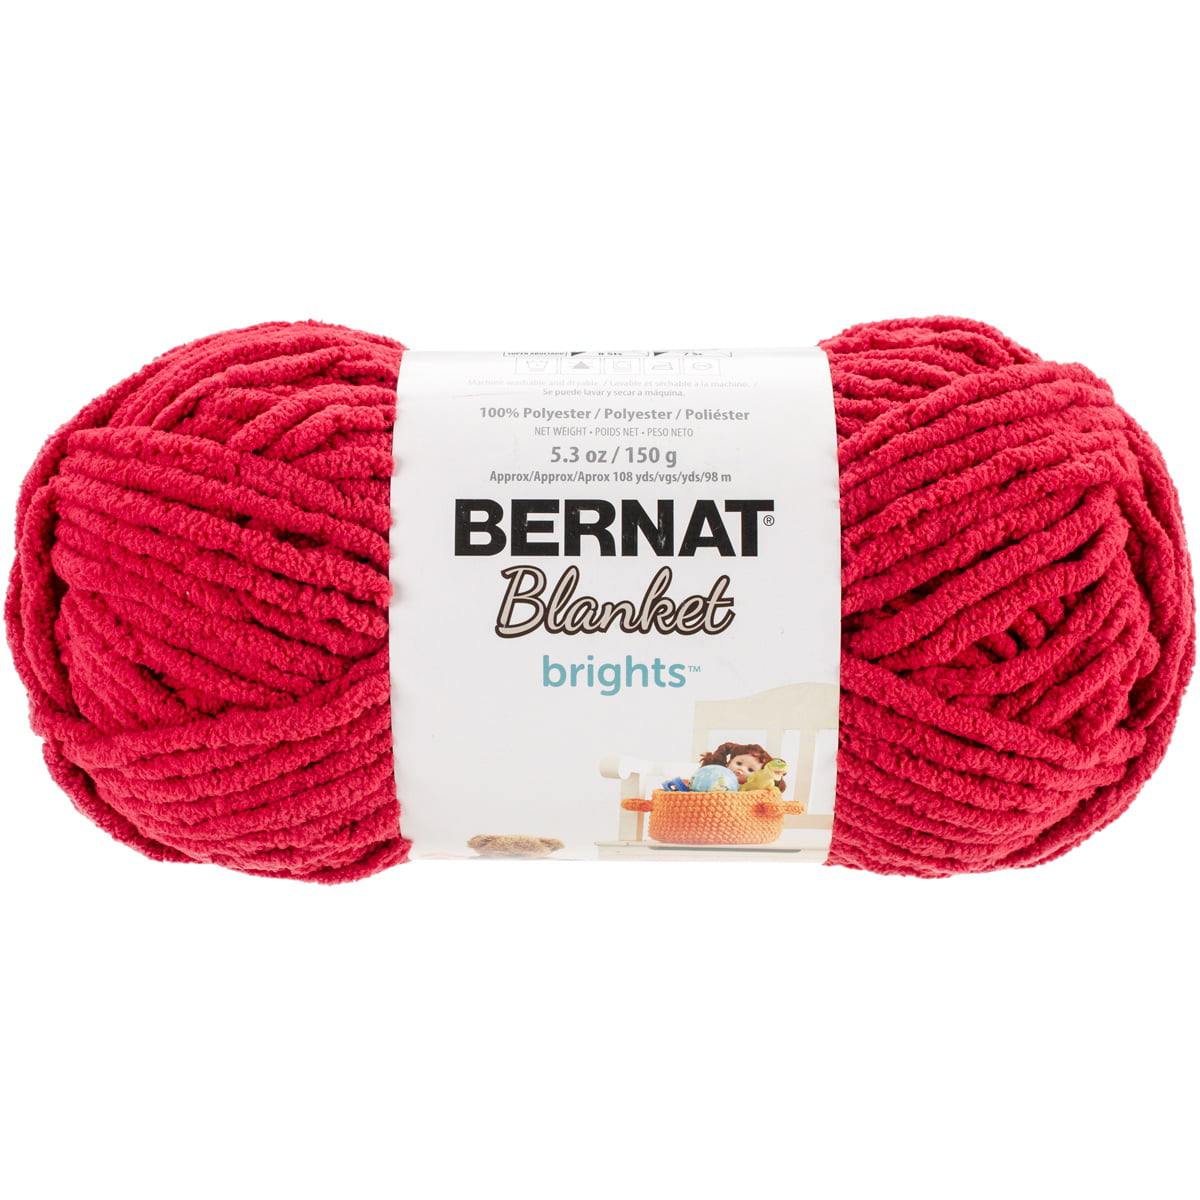 Bernat Blanket Brights Yarn - Race Car Red, Multipack of 6 